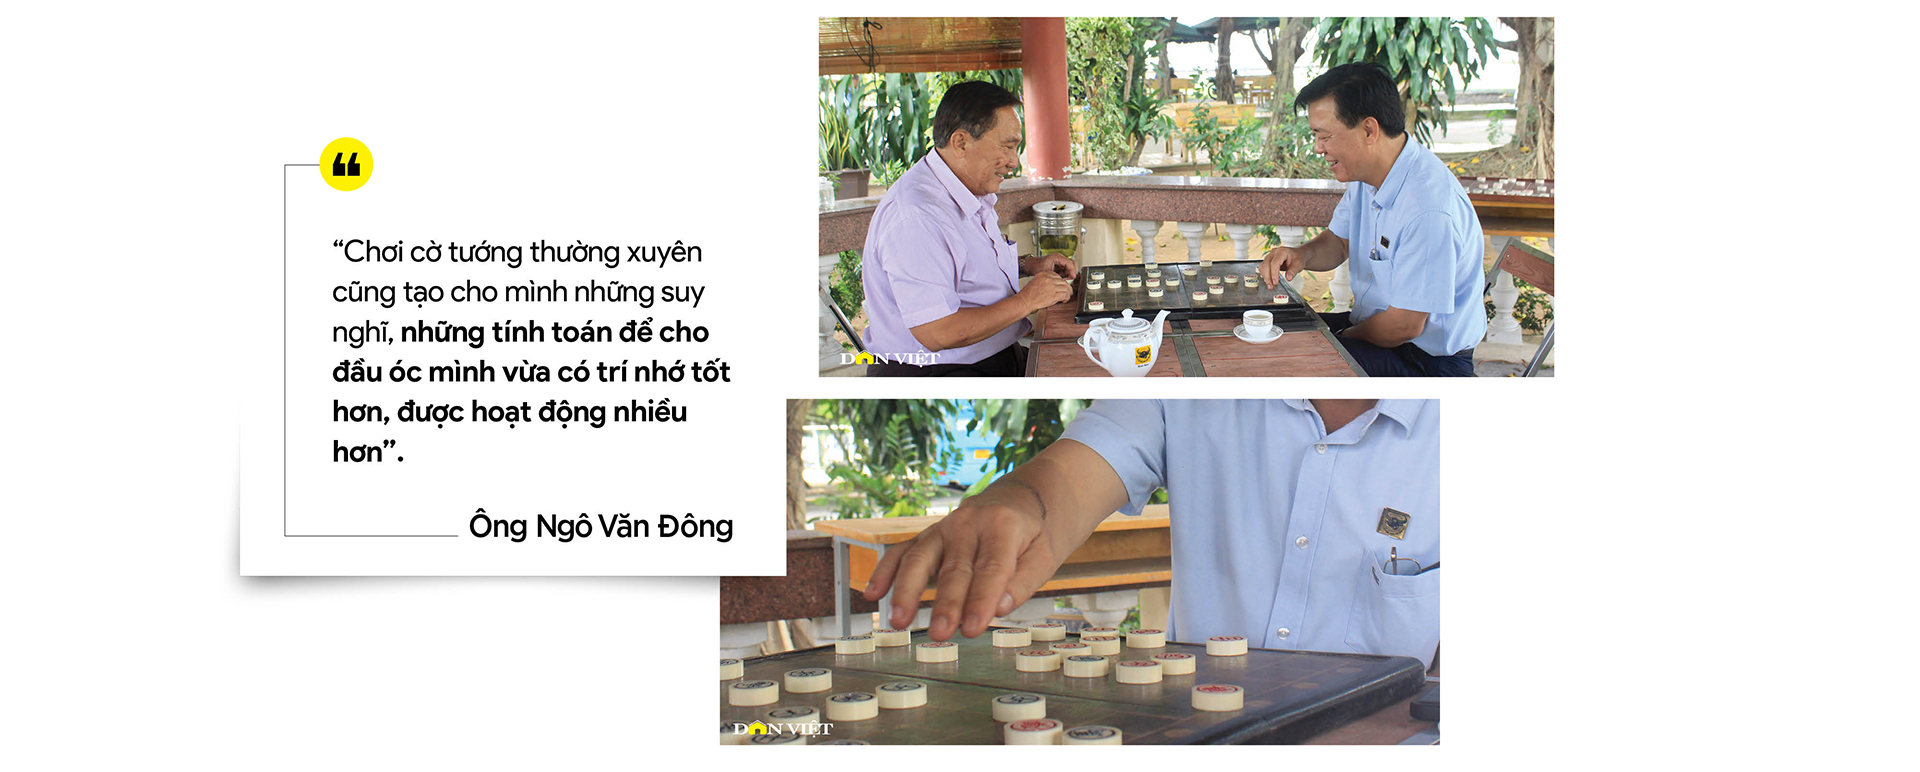 Tổng Giám đốc Bình Điền - ông Ngô Văn Đông: Đặt cho mình sứ mệnh đồng hành và chia sẻ với nông dân - Ảnh 4.